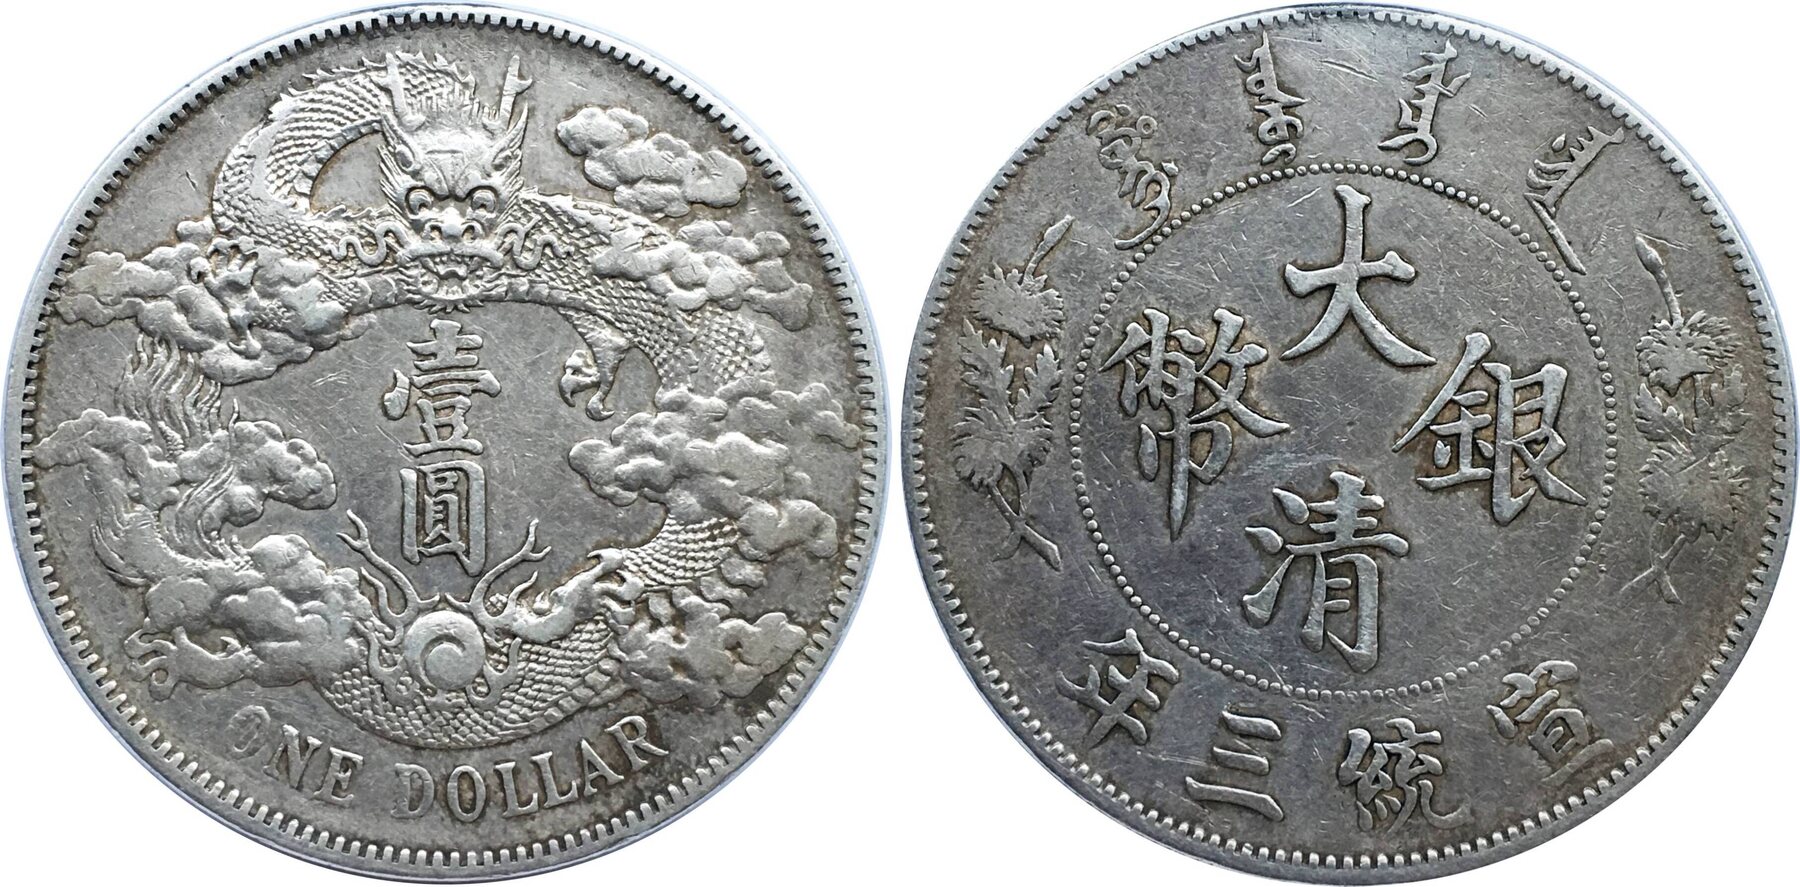 China, Qing dynasty. Xuang Tong, Year 3 (1911) One Dollar, EF | MA 